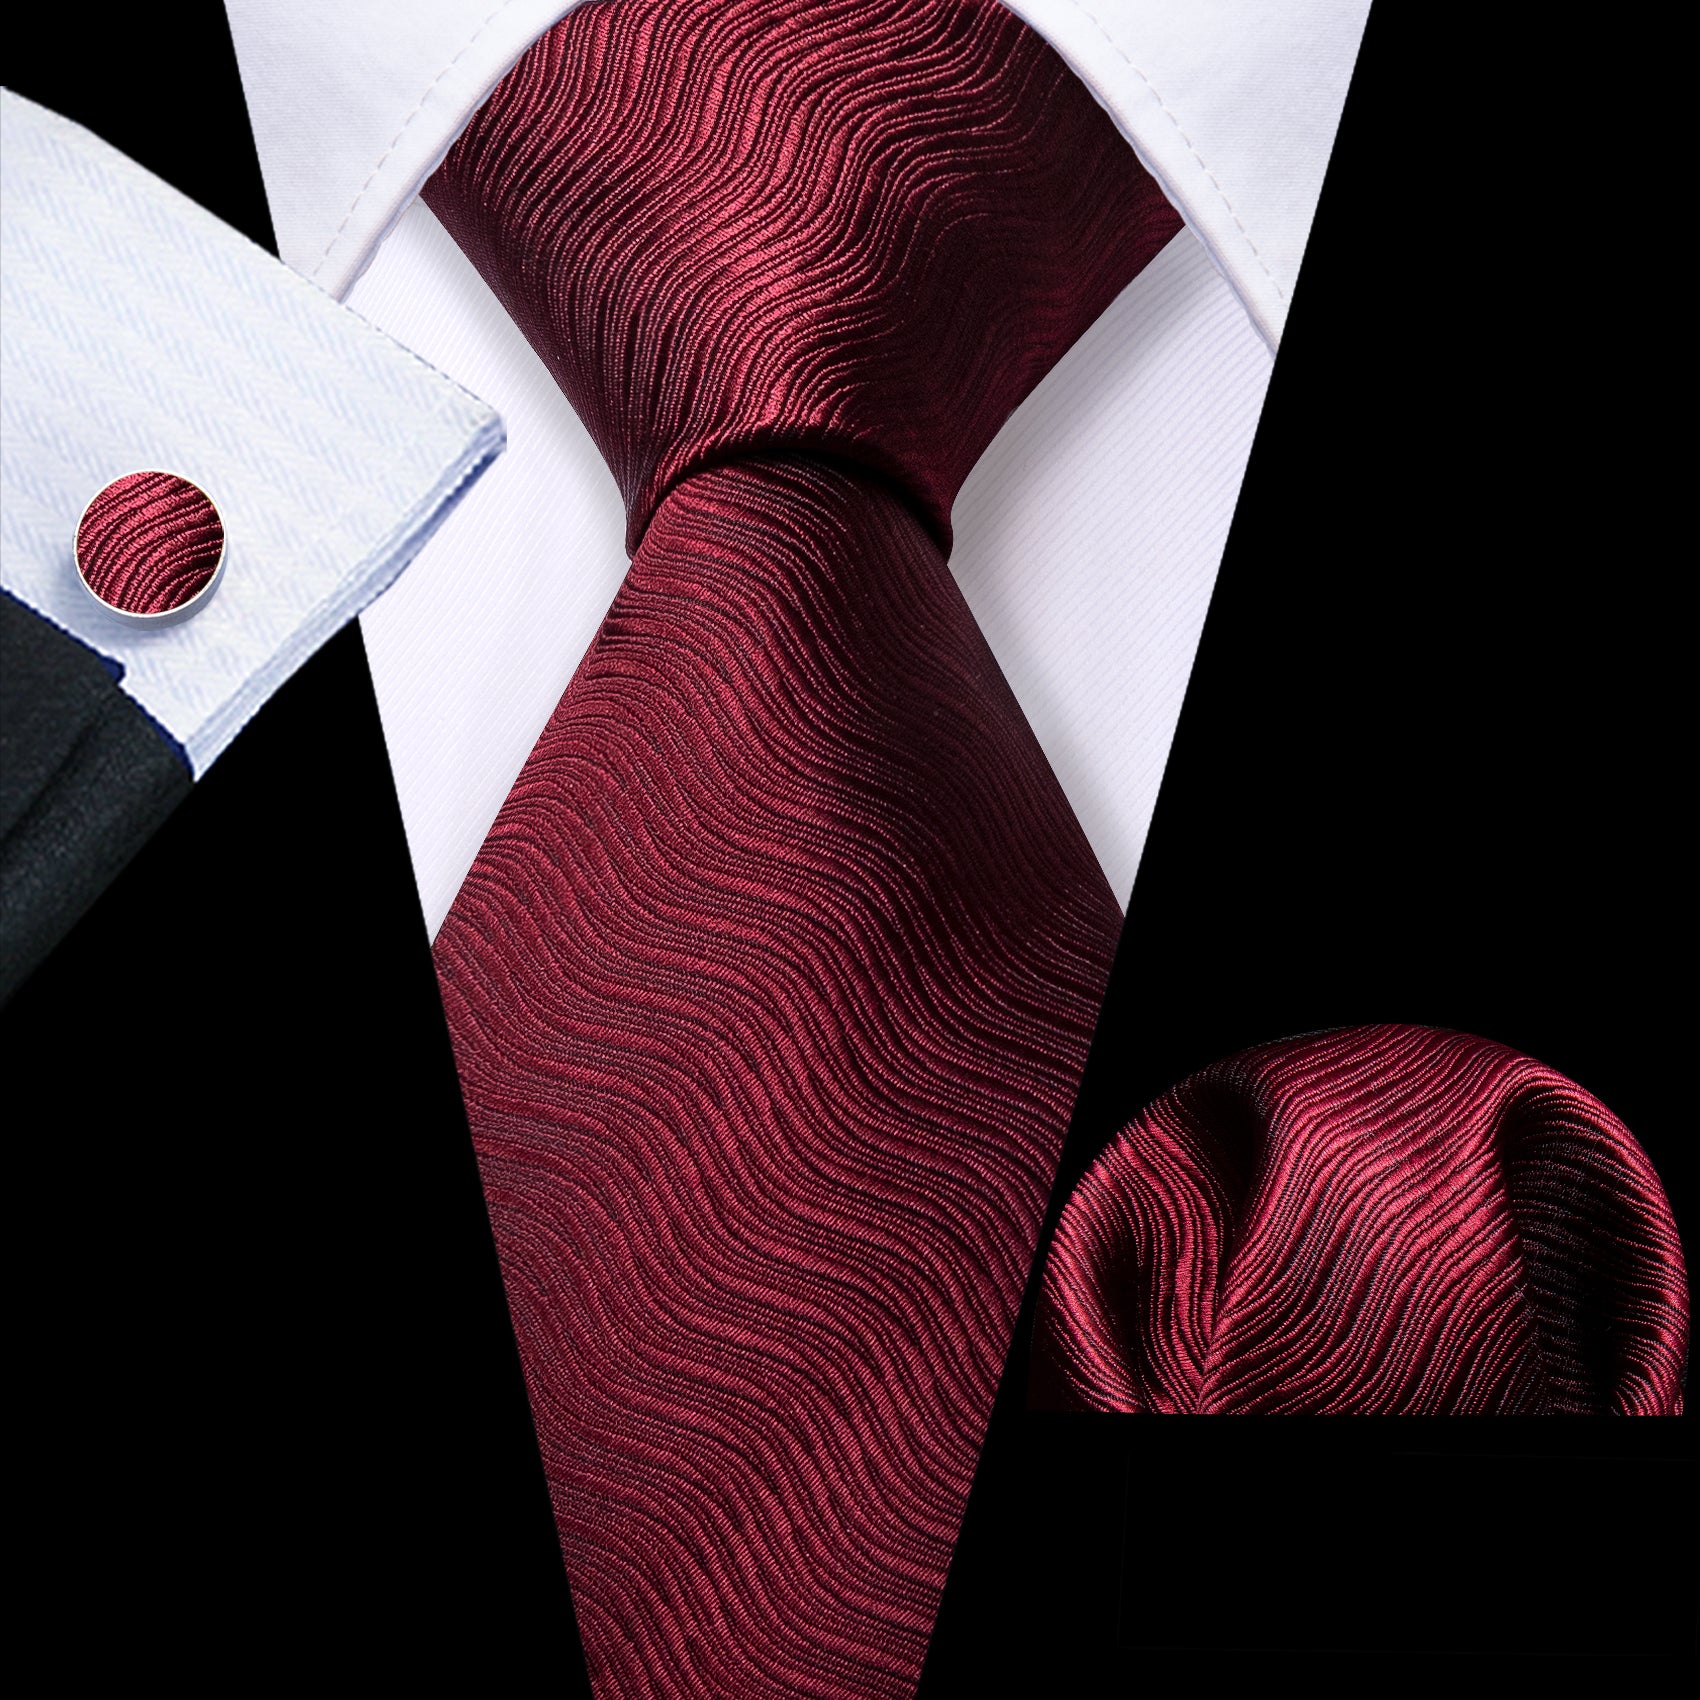 Burgundy Red Solid Ripples Silk Tie Handkerchief Cufflinks Set